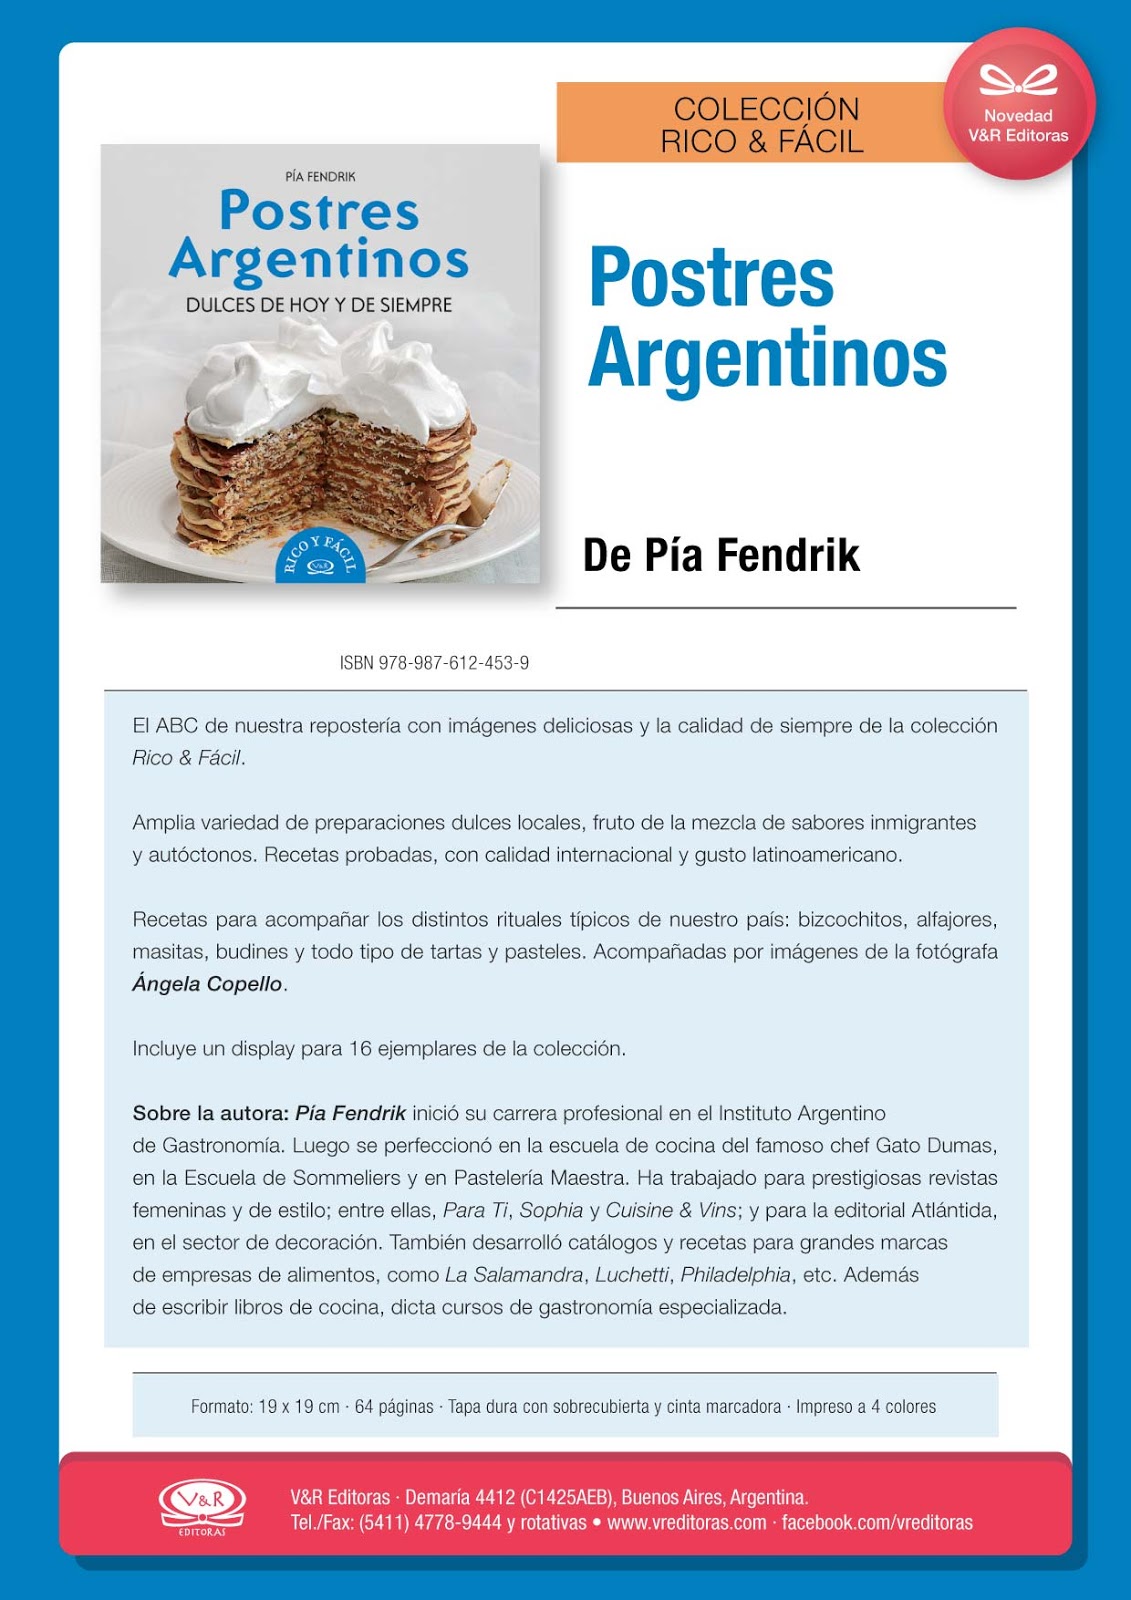 Cocineando Recetas de Otoño, libro gratuito en PDF 